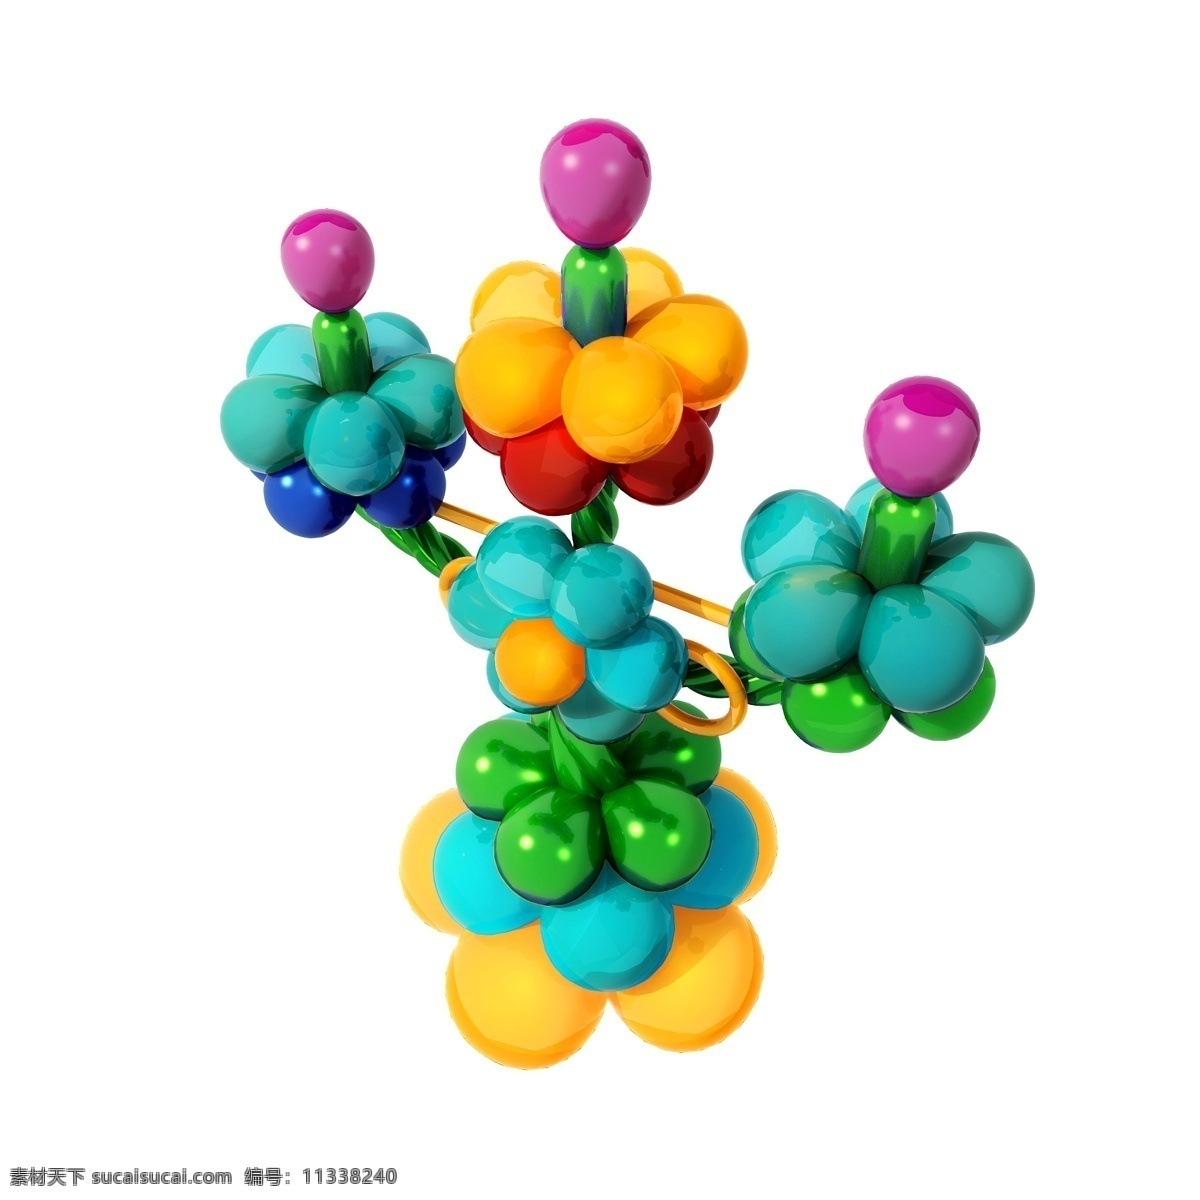 蜡烛 造型 气球 图 玩具 仿真 质感 精致 儿童节 套图